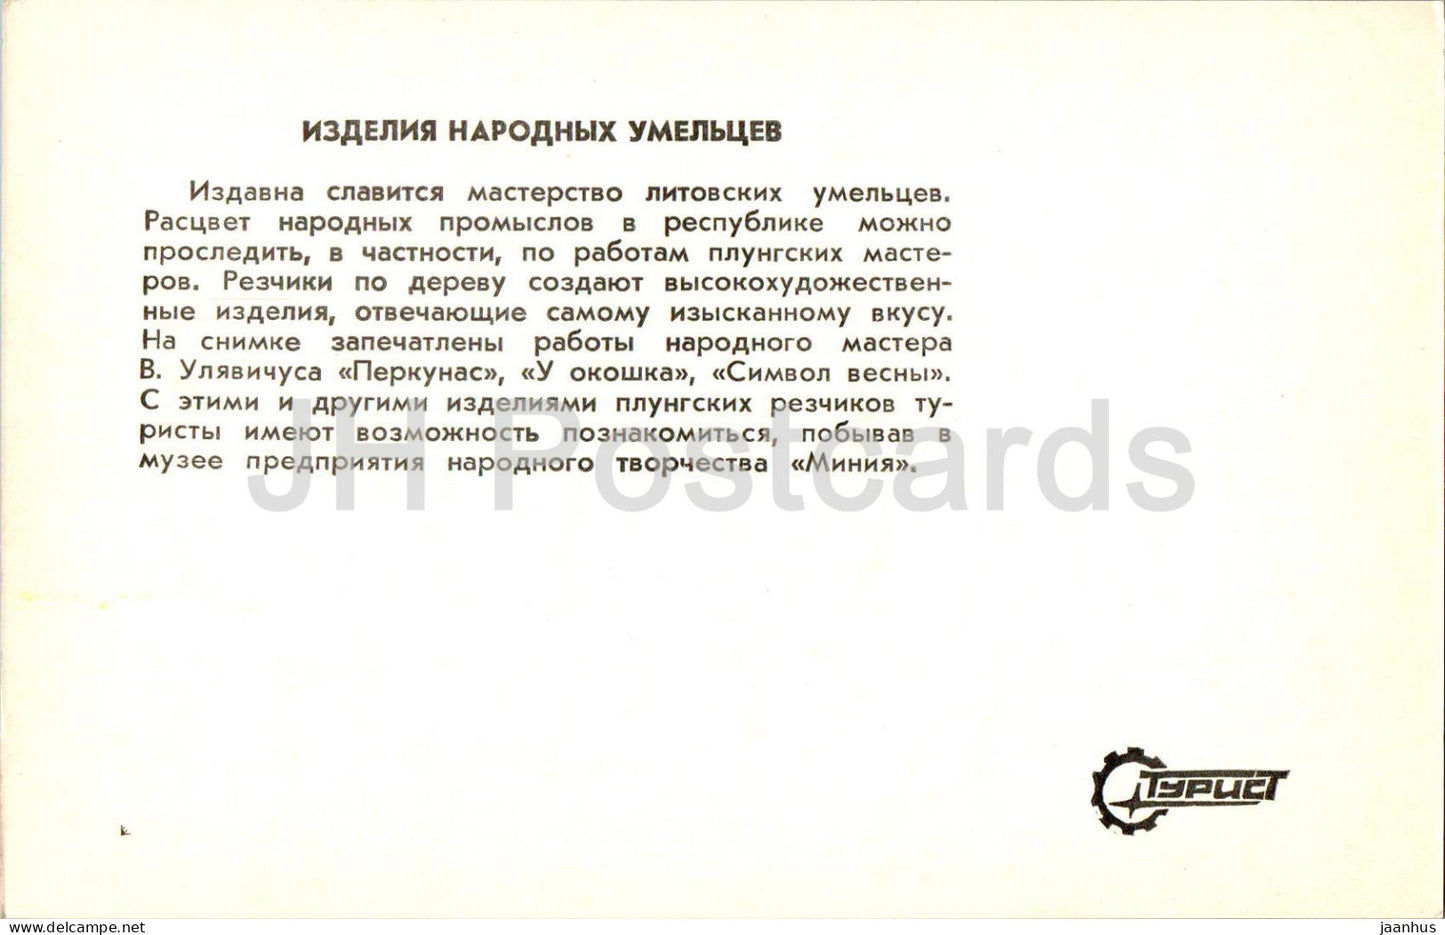 Plunge - handicrafts - 1984 - Lithuania USSR - unused